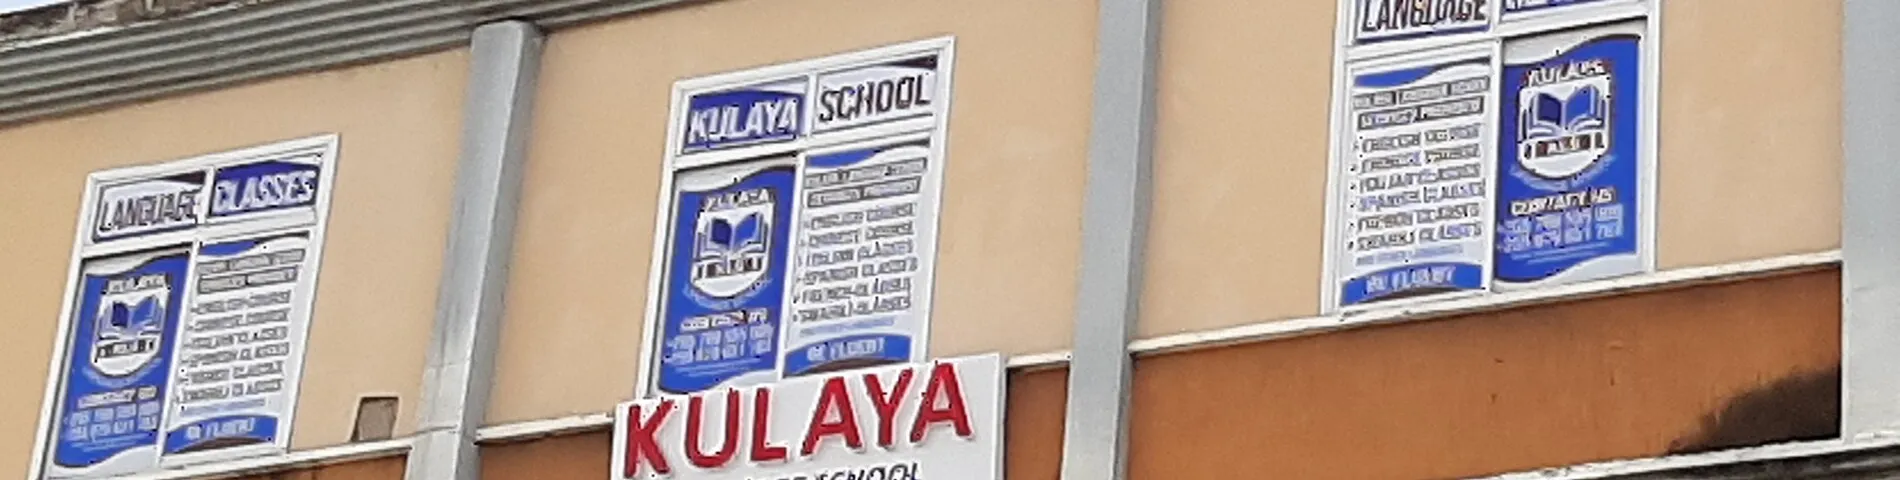 Kulaya Language School immagine 1